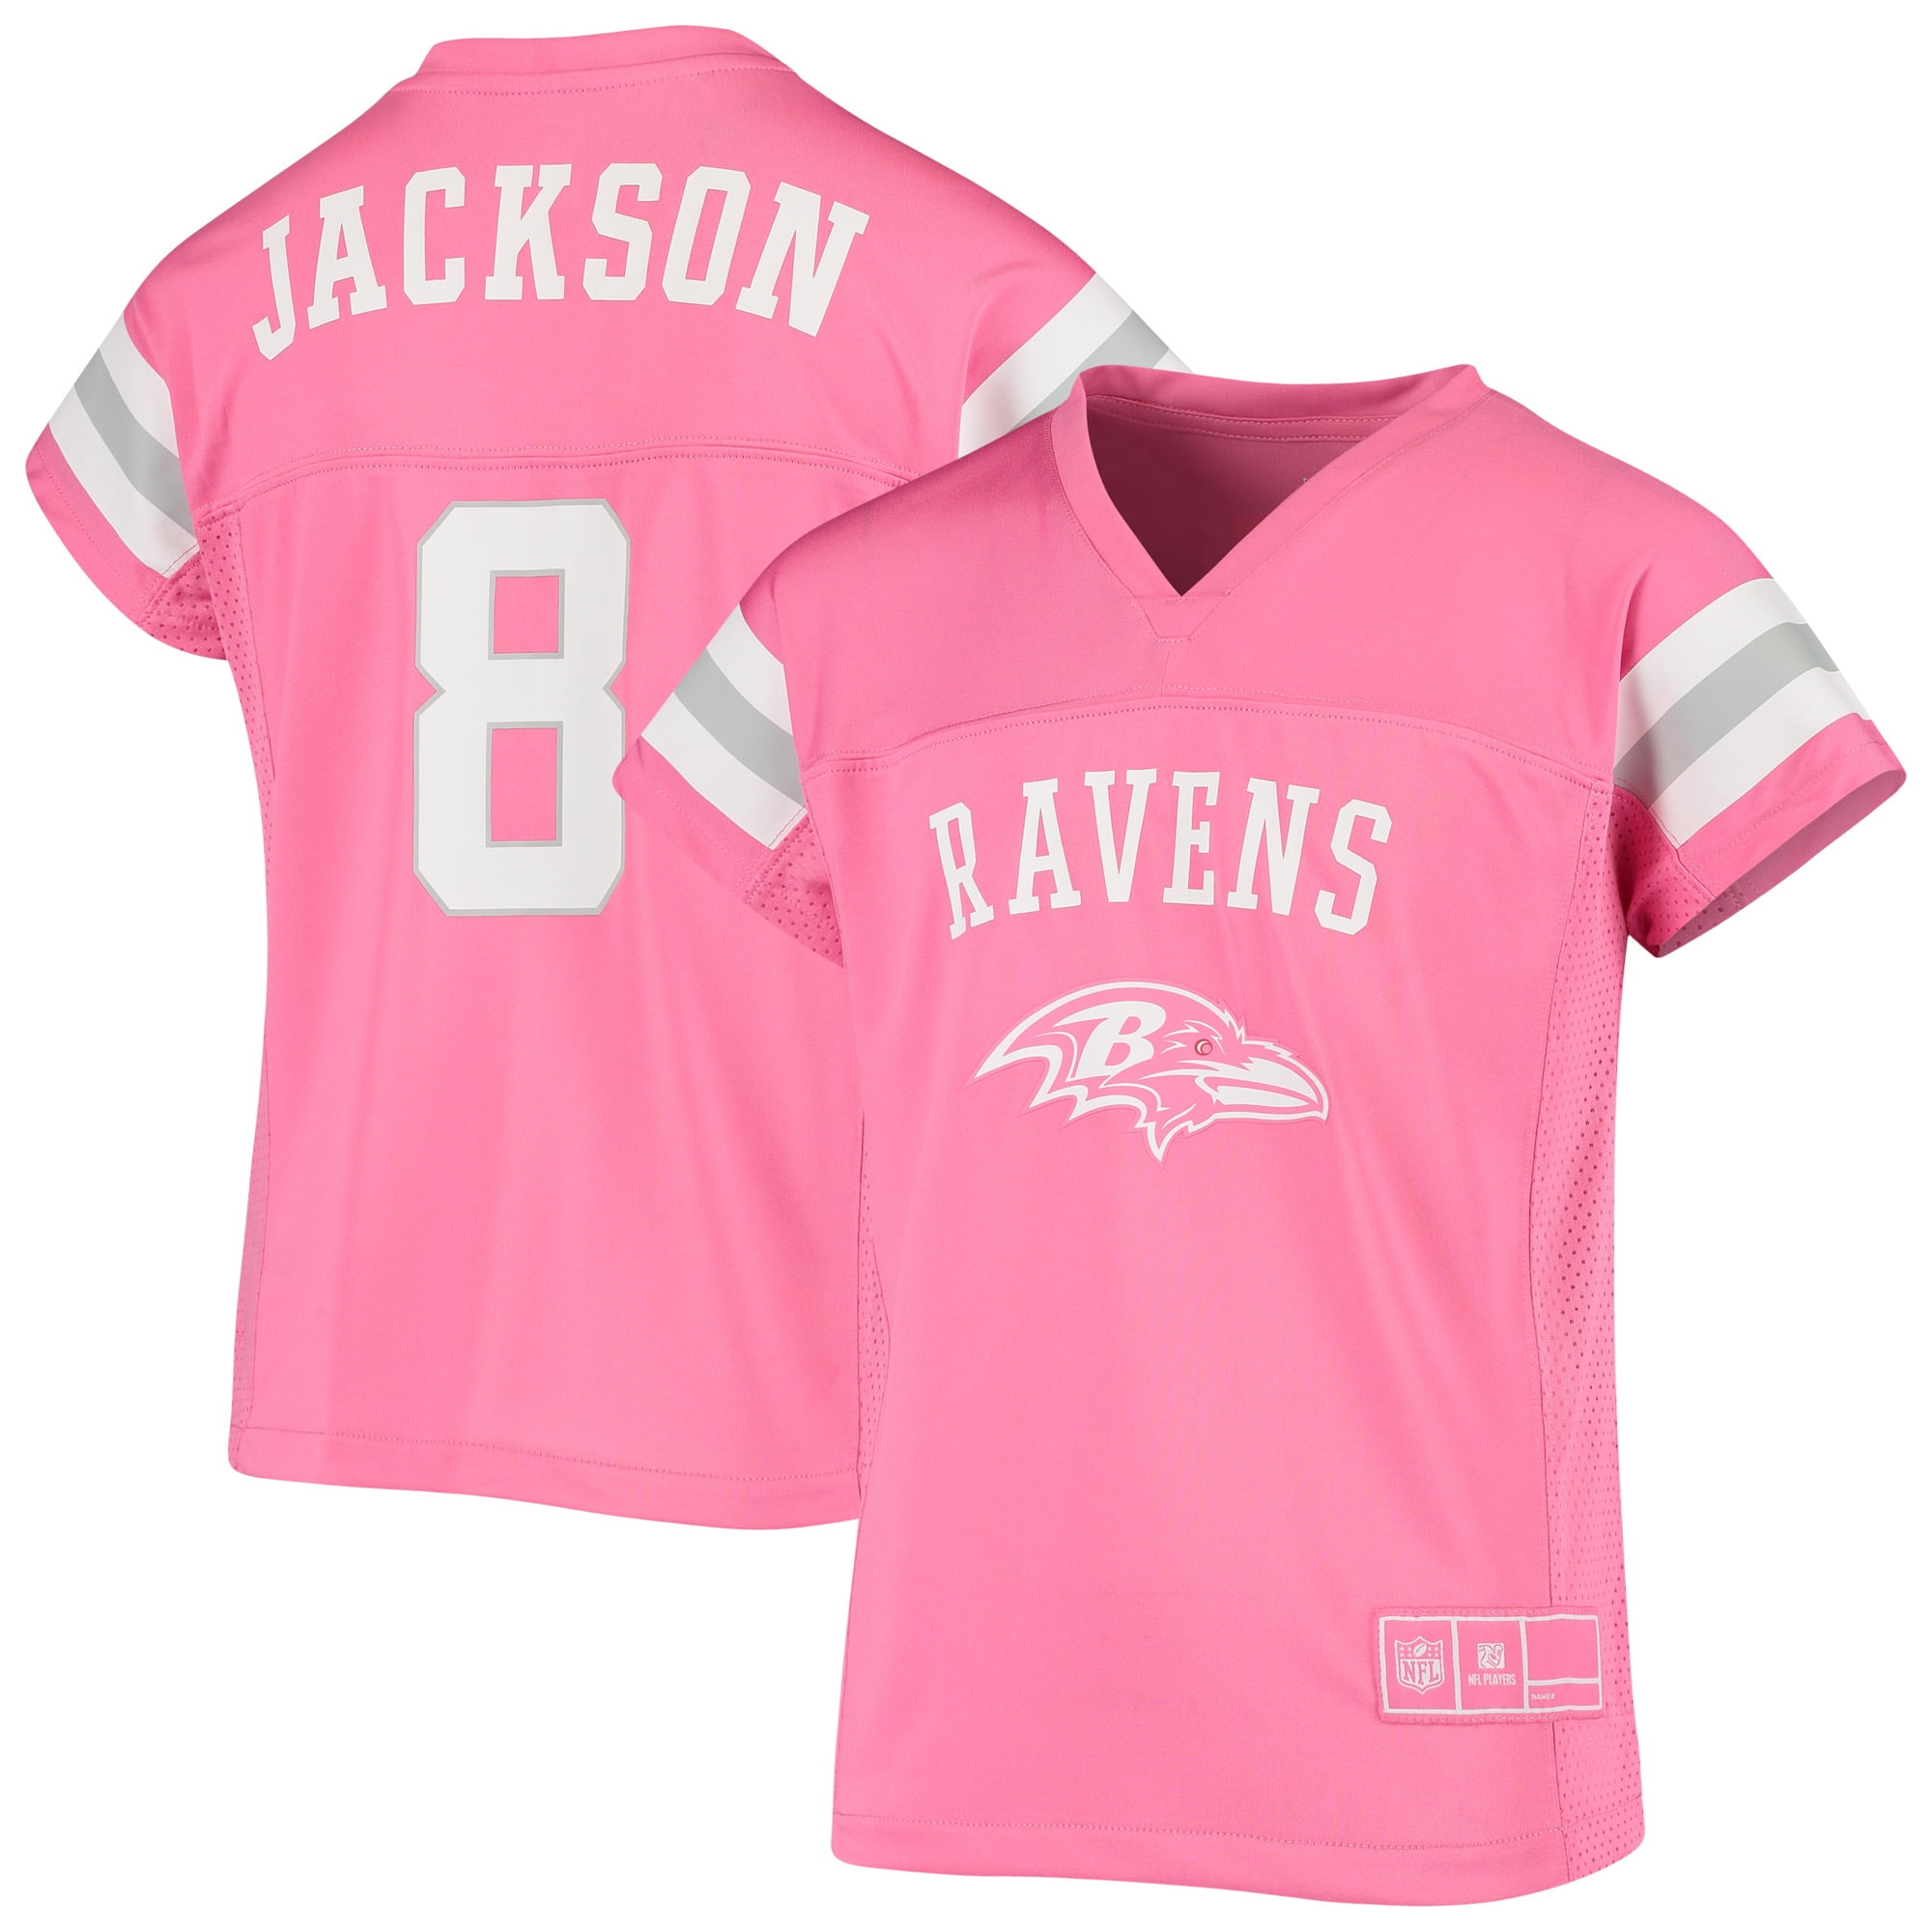 pink ravens jersey